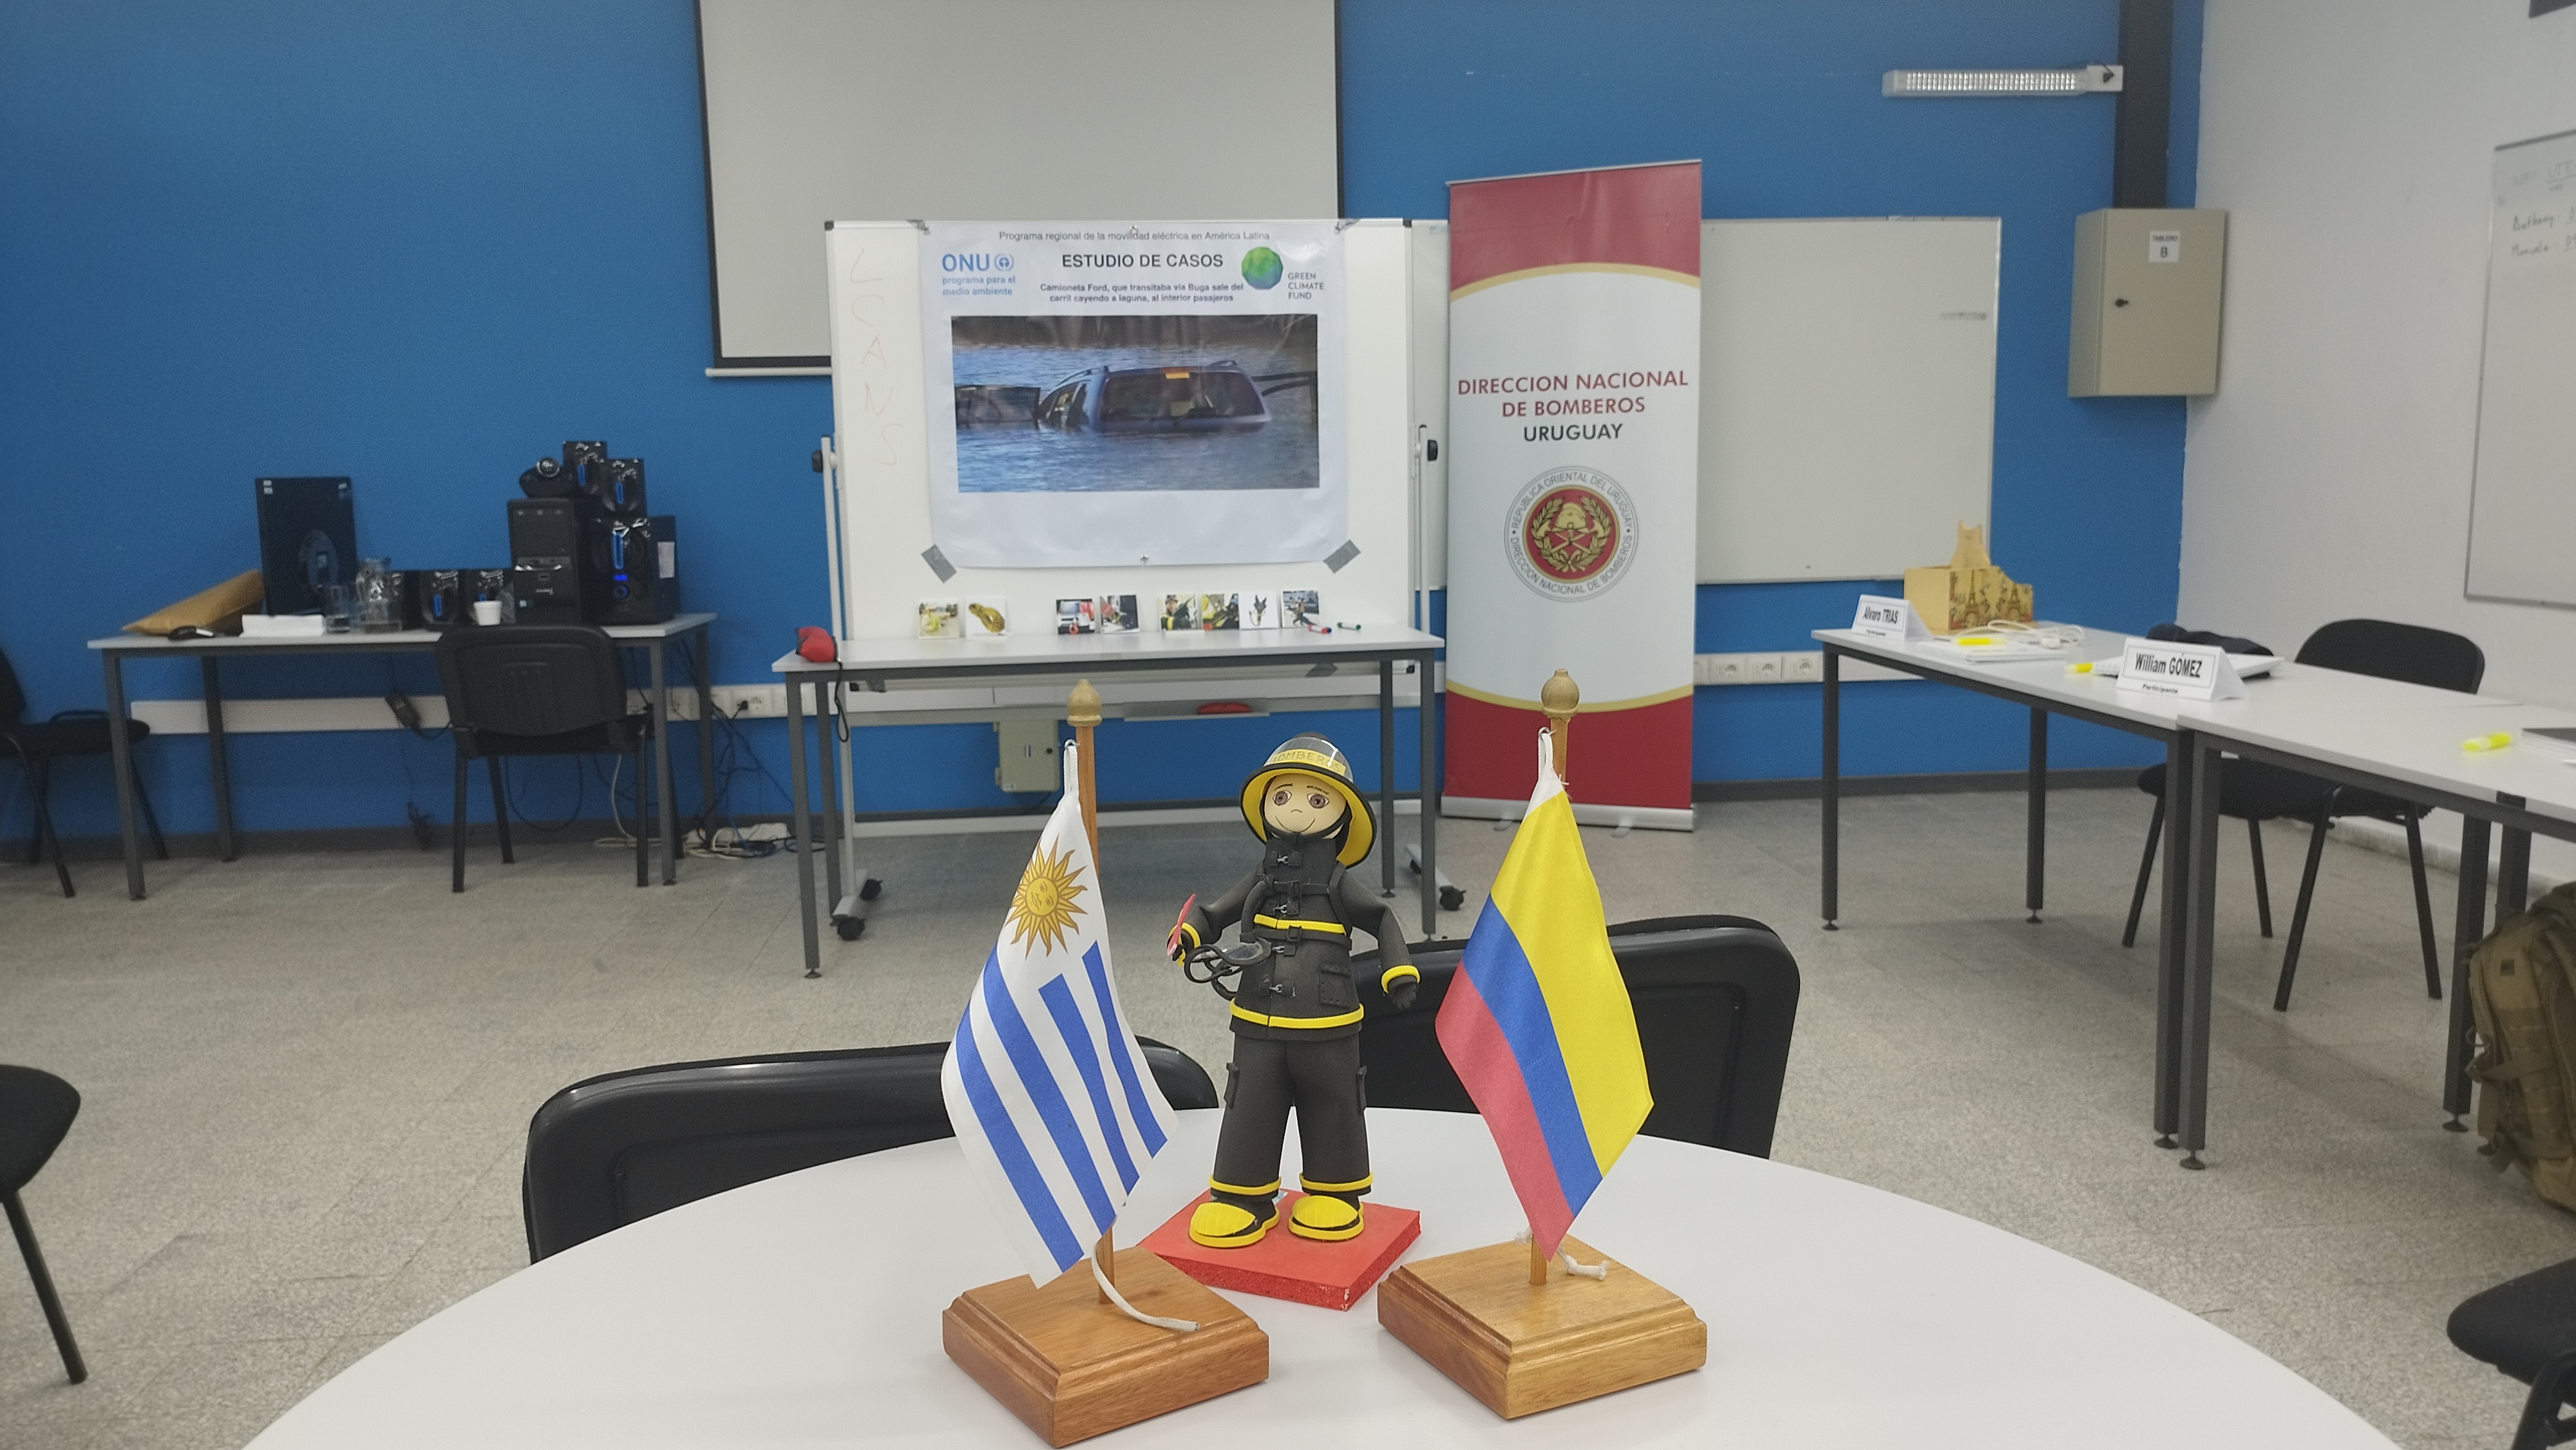 IMG_20230511_103322-9h9xifca.jpg - El pasado jueves 11 de mayo culminó la &#034;Capacitación para bomberos sobre manejo de incidentes relacionados con la movilidad eléctrica&#034; en donde se capacitaron a 25 bomberos en la Base Aérea de Santa Bernardina del departamento de Durazno. Esta capacitación es la continuación del primer curso regional que organizó la plataforma MOVE del Programa de la Naciones Unidas para el Medio Ambiente a finales de 2022 en Paraguay, donde participaron y se formaron dos bomberos instructores de Uruguay.